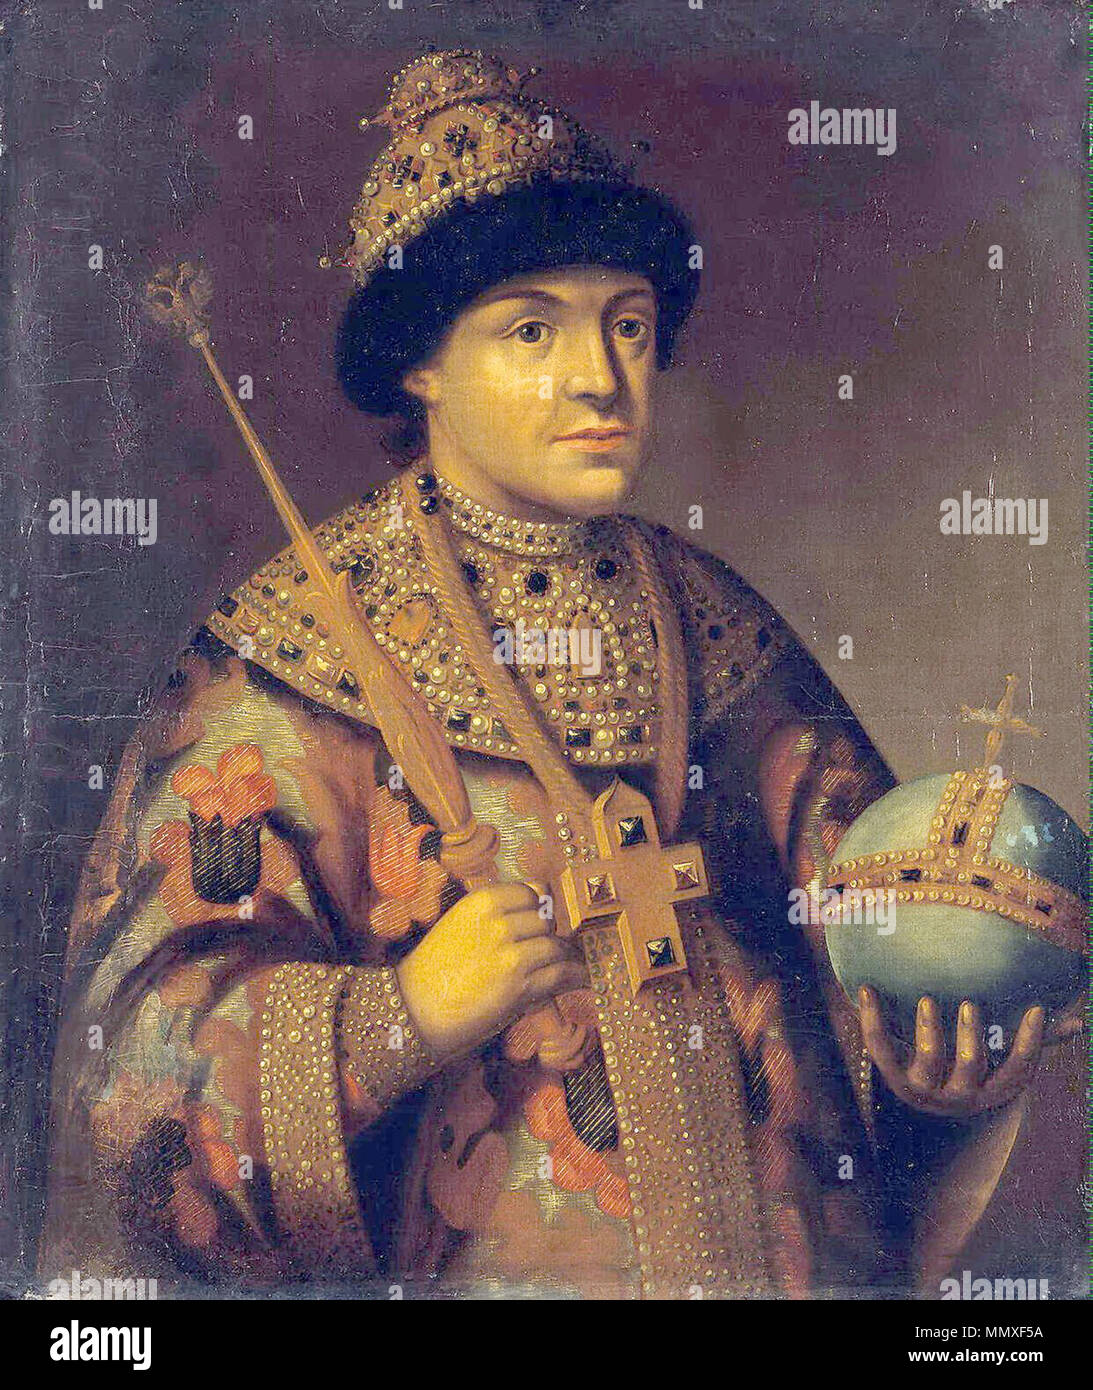 . Feodor (Theodore) III Alexeevich de Russie (en russe : Фёдор Алексеевич III) (9 juin 1661 - 7 mai 1682) . Date inconnue. Feodor III de Russie Banque D'Images